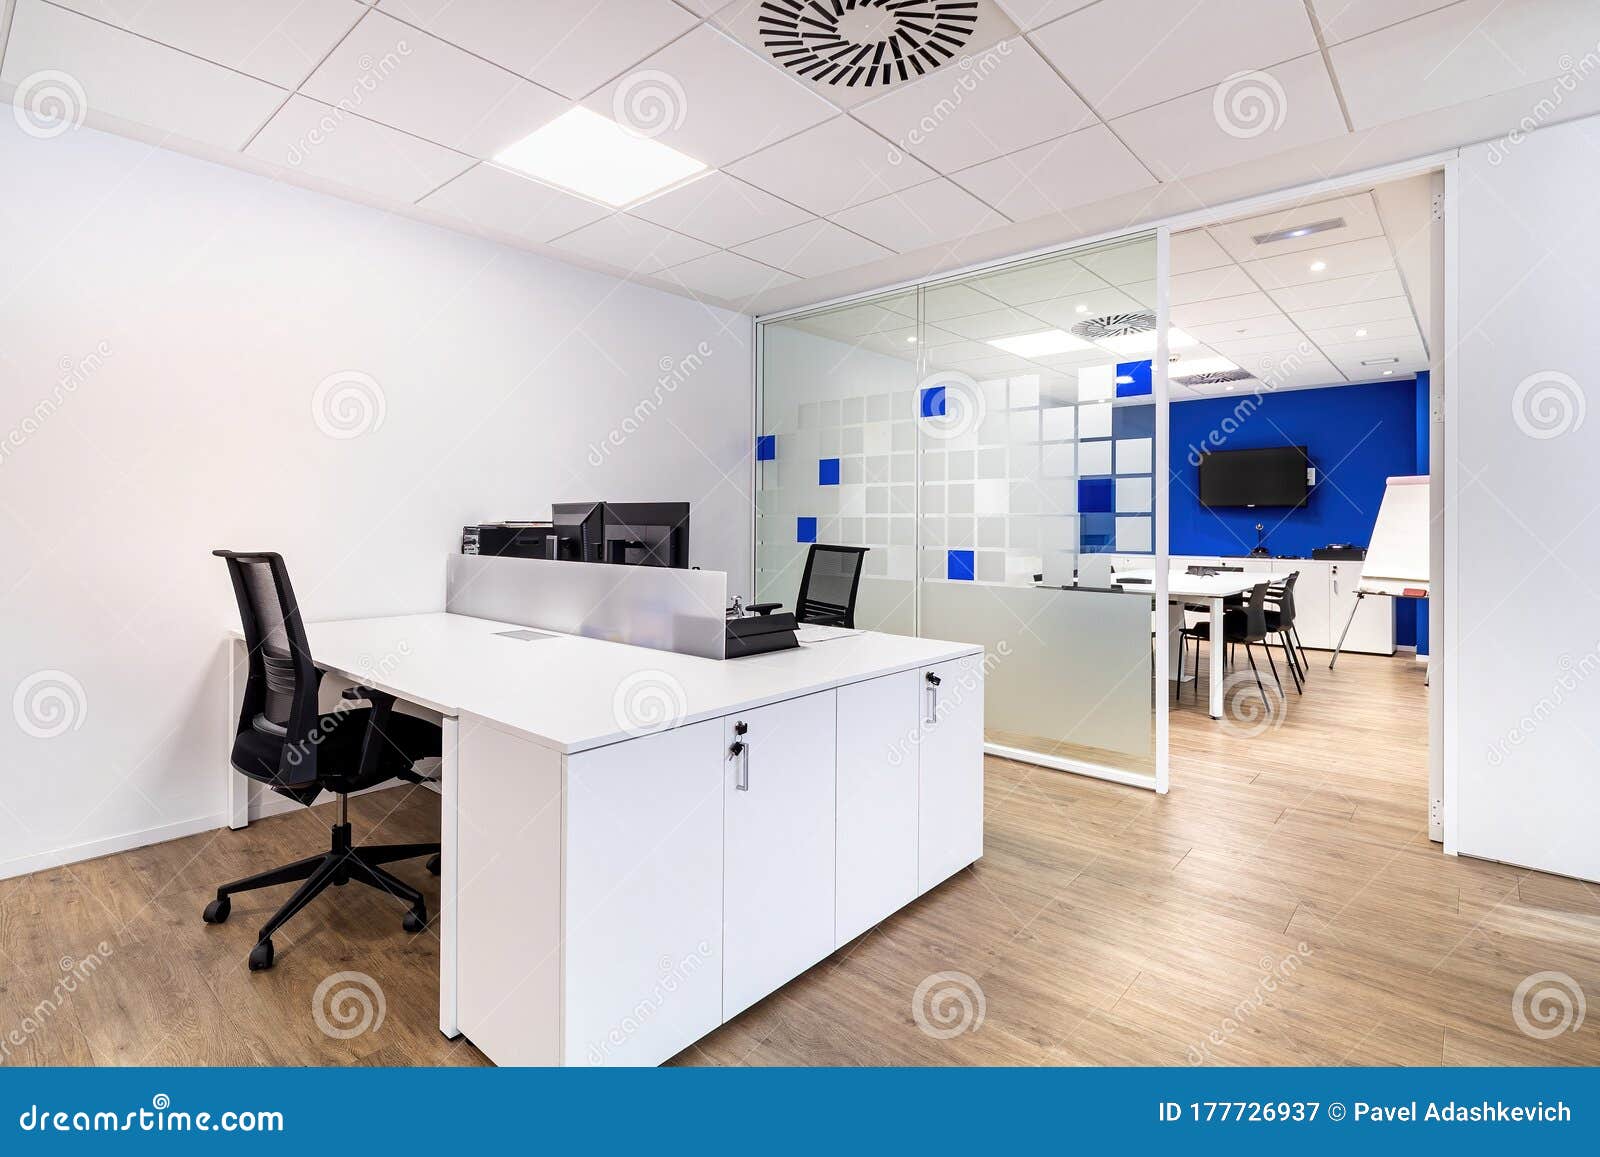 Không gian làm việc luôn là nơi để thể hiện phong cách và sự đẳng cấp của bạn. Hãy cùng ngắm nhìn hình ảnh về nội thất văn phòng hiện đại và lịch sự để tìm cho mình sự lựa chọn hoàn hảo.